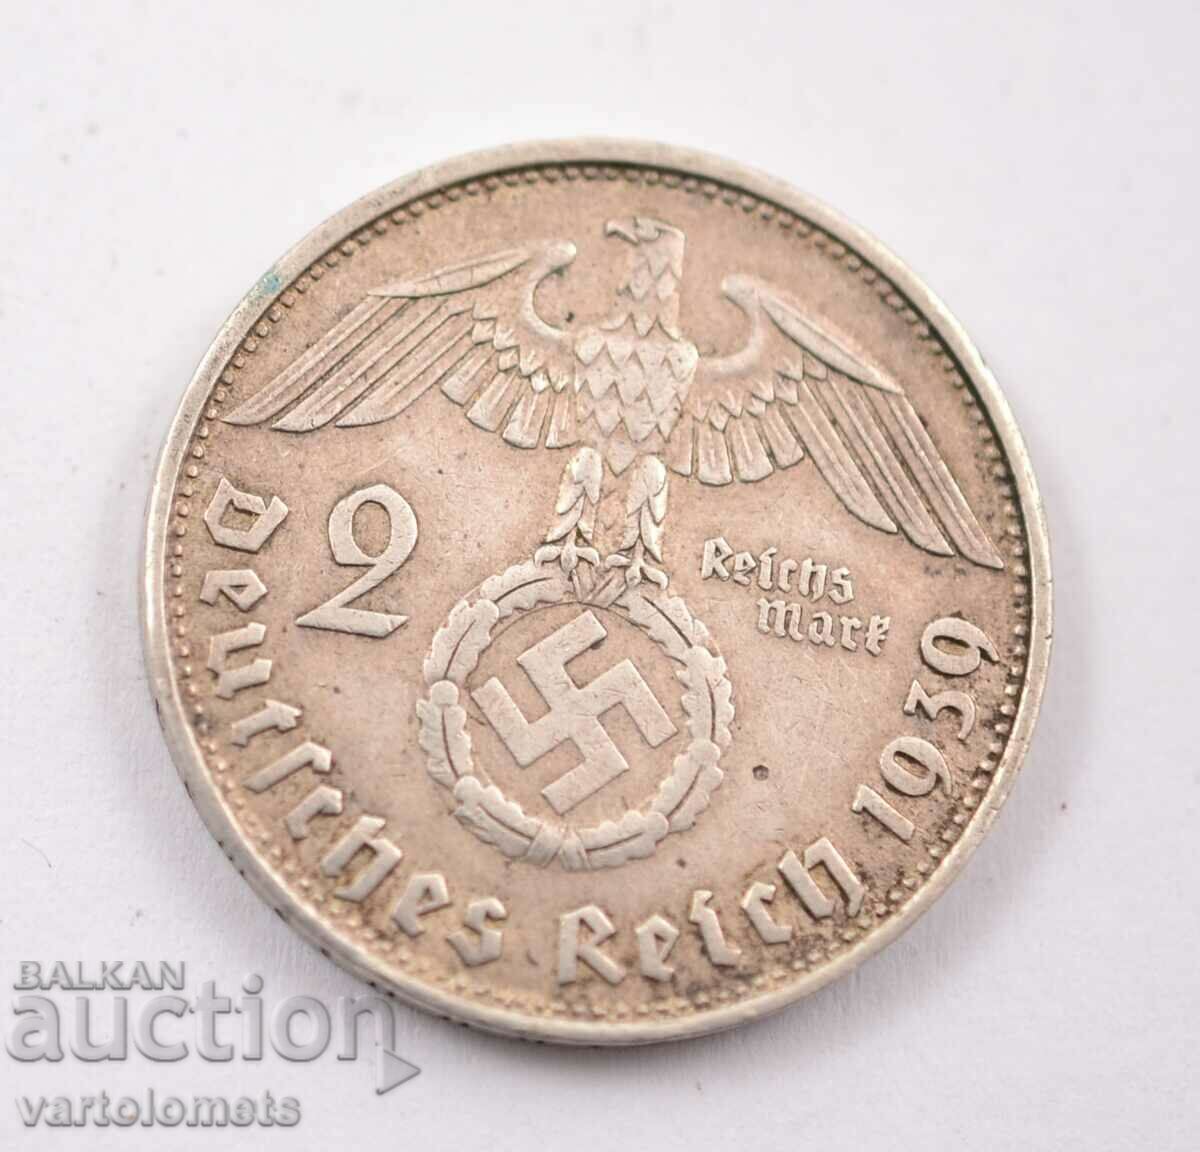 2 Reichsmarks 1939 - Germania Al Treilea Reich argint 625/ 8 g